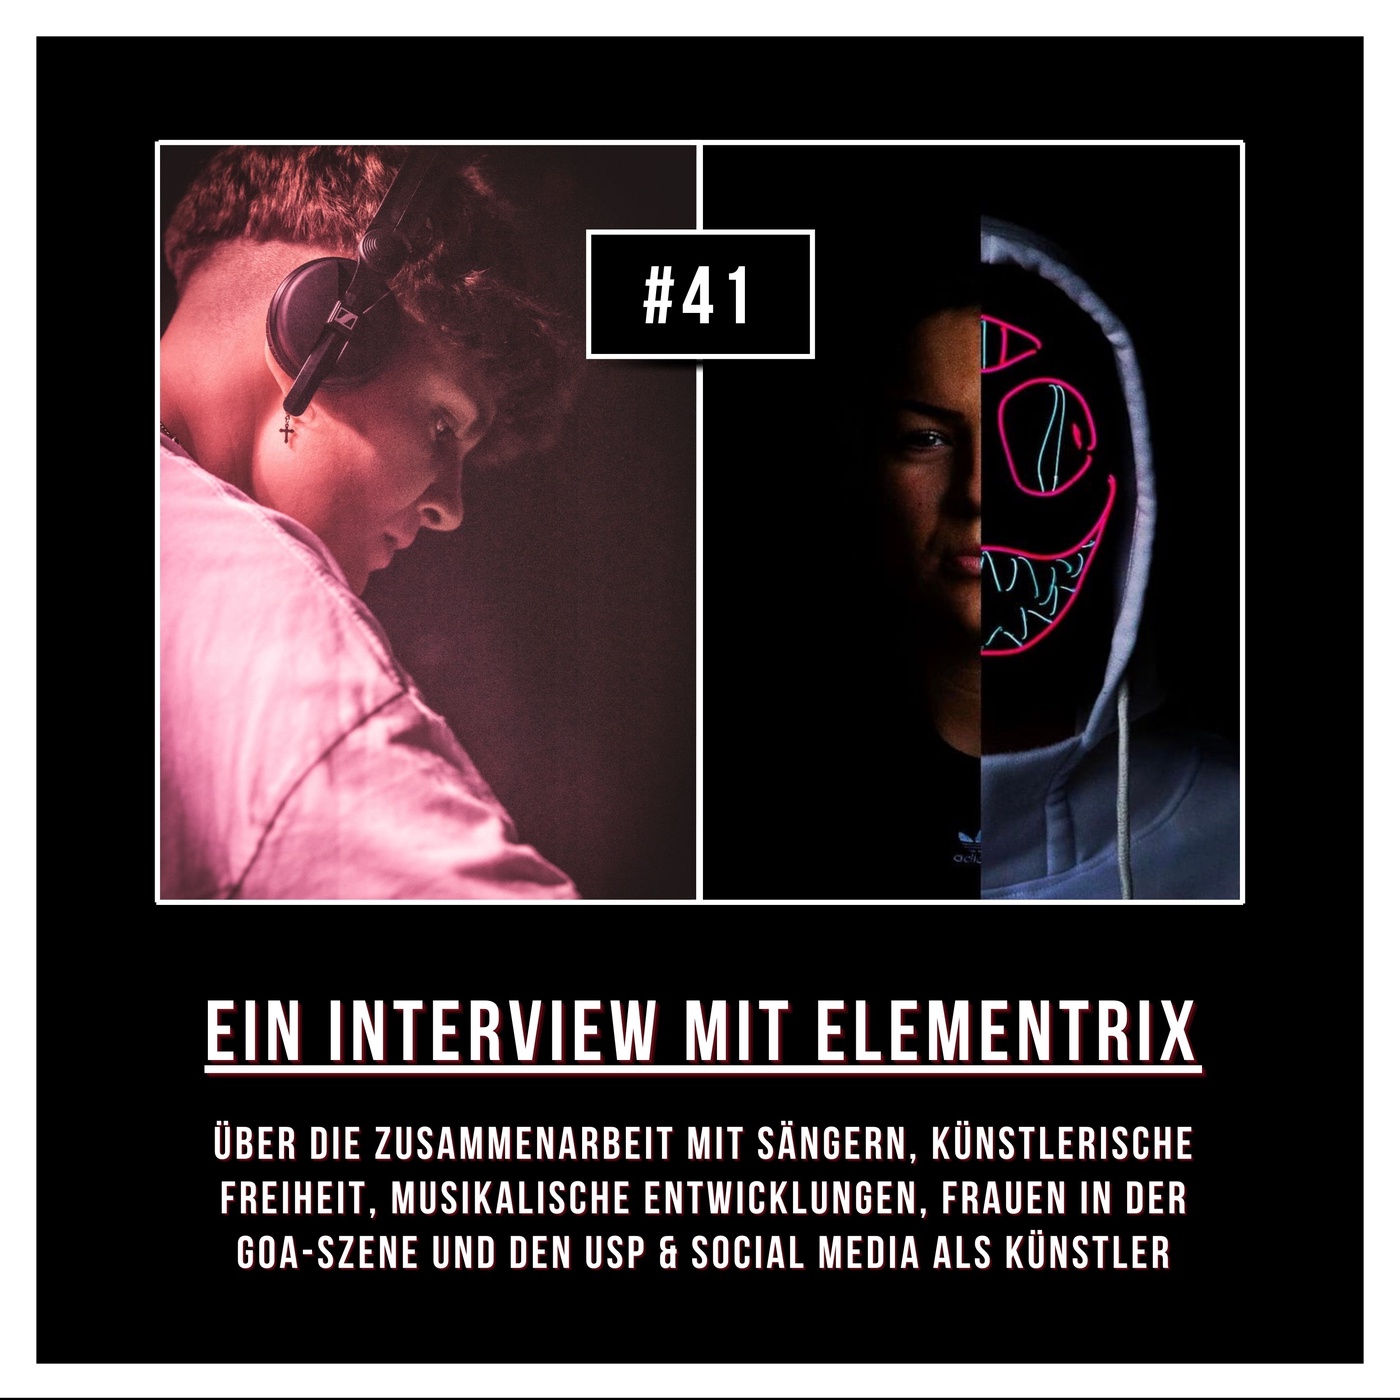 #41 Interview mit Elementrix: Über Kollaborationen mit Sängern, den USP & Social Media als Artist & Frauen in der Szene